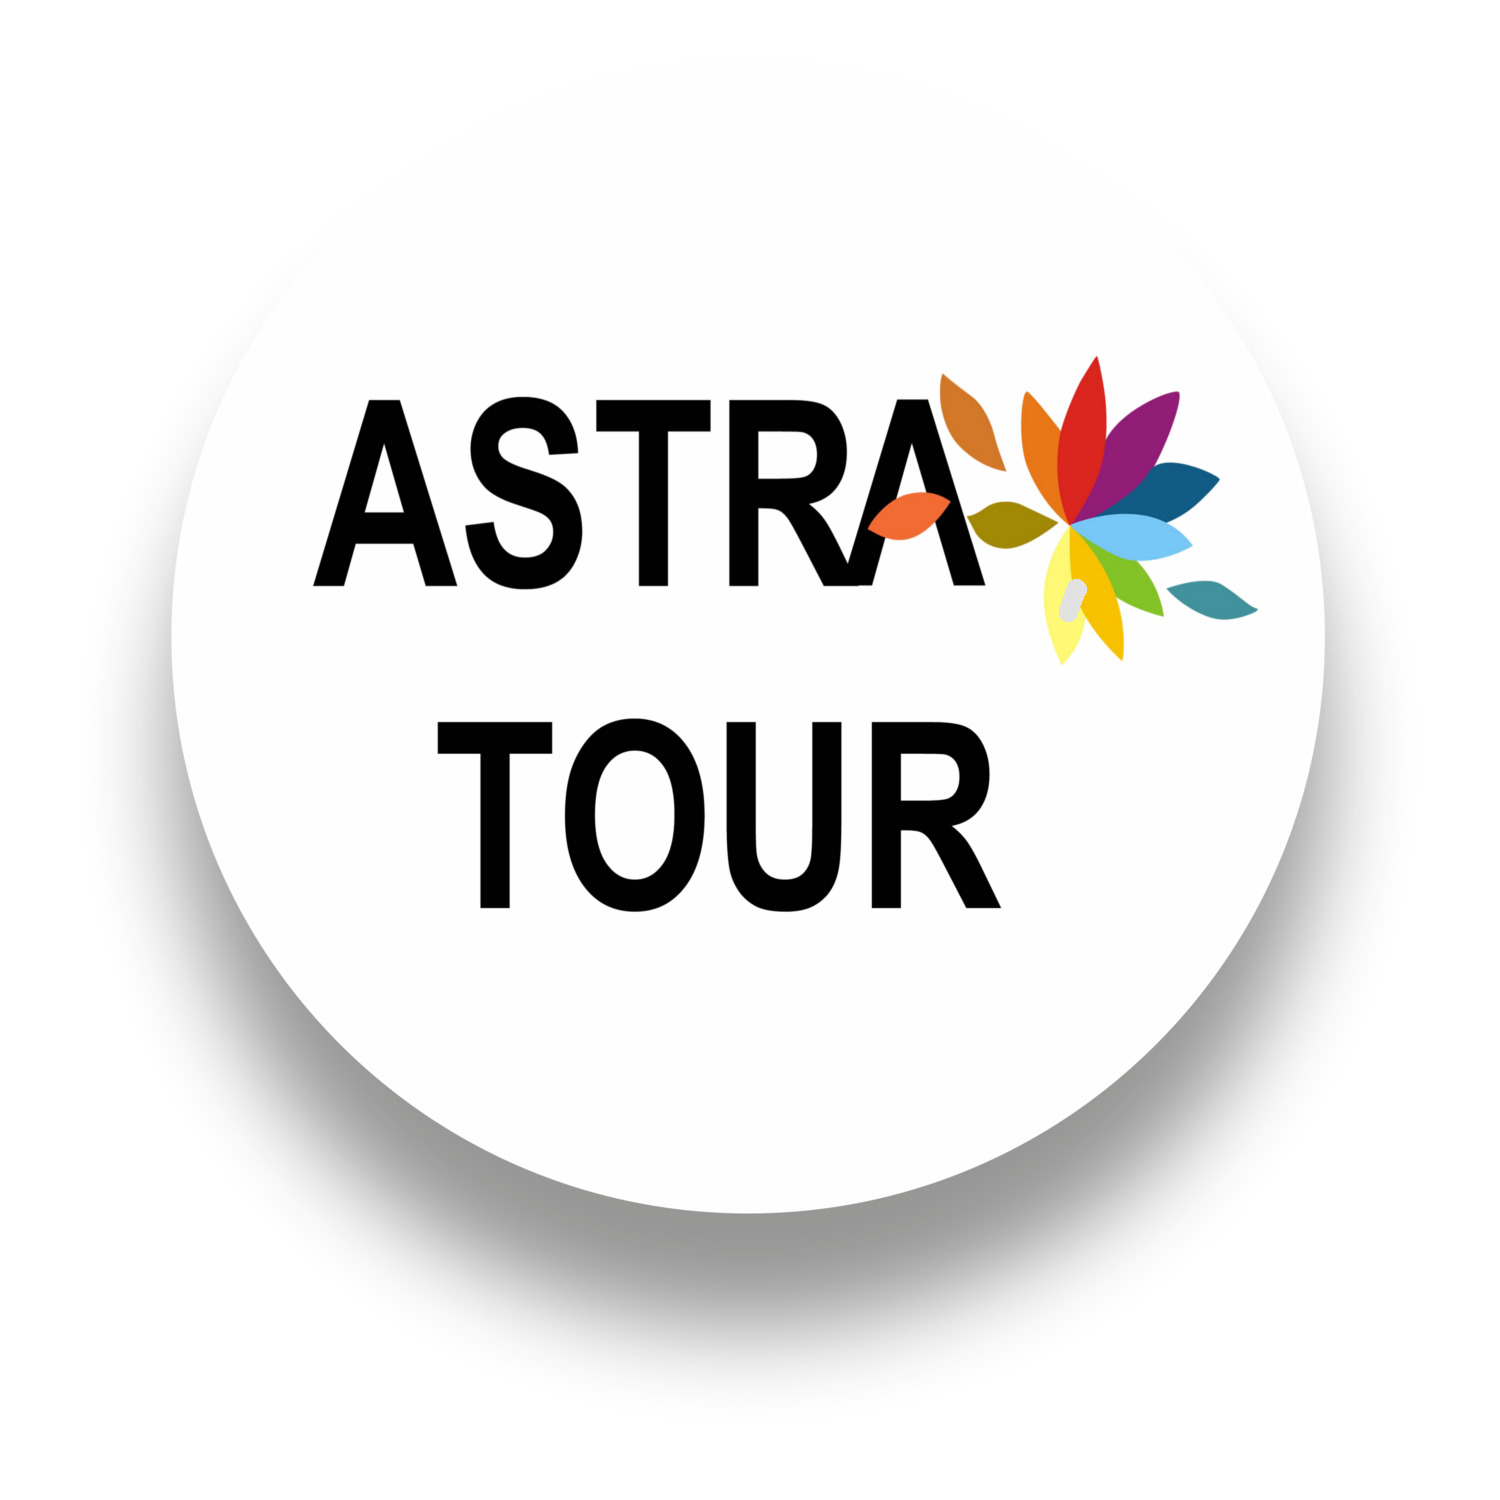 Турфирма астрахань сайт. Astra Tour Club. Турагентство Астрахань.